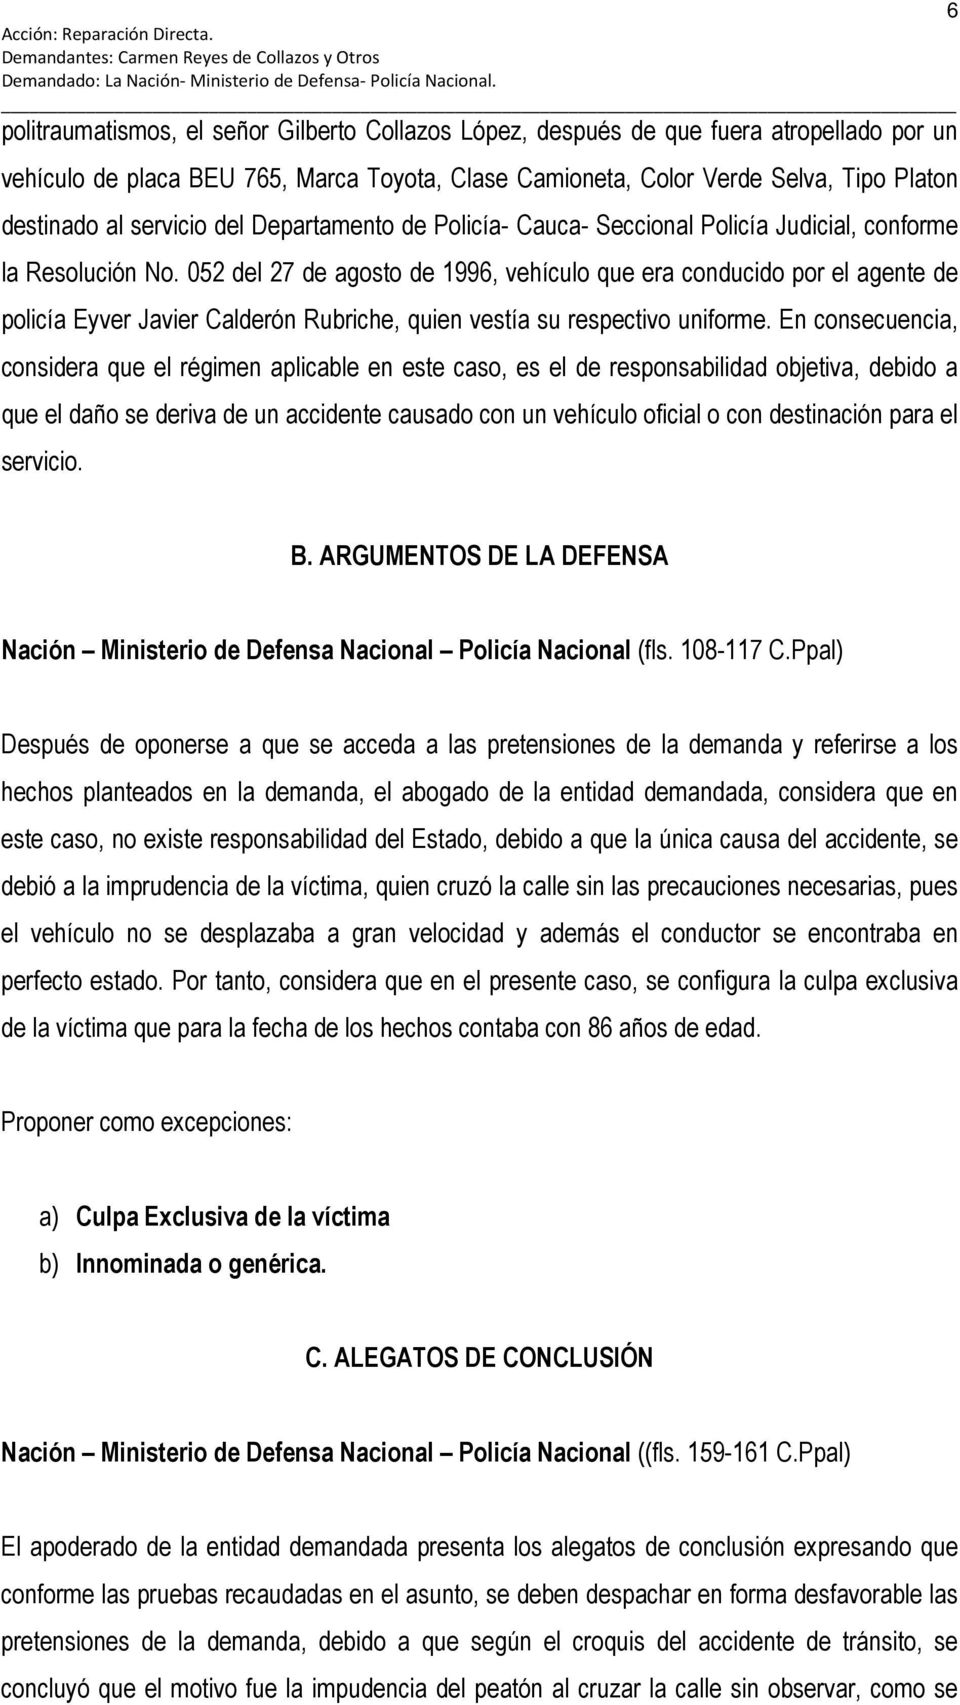 052 del 27 de agosto de 1996, vehículo que era conducido por el agente de policía Eyver Javier Calderón Rubriche, quien vestía su respectivo uniforme.